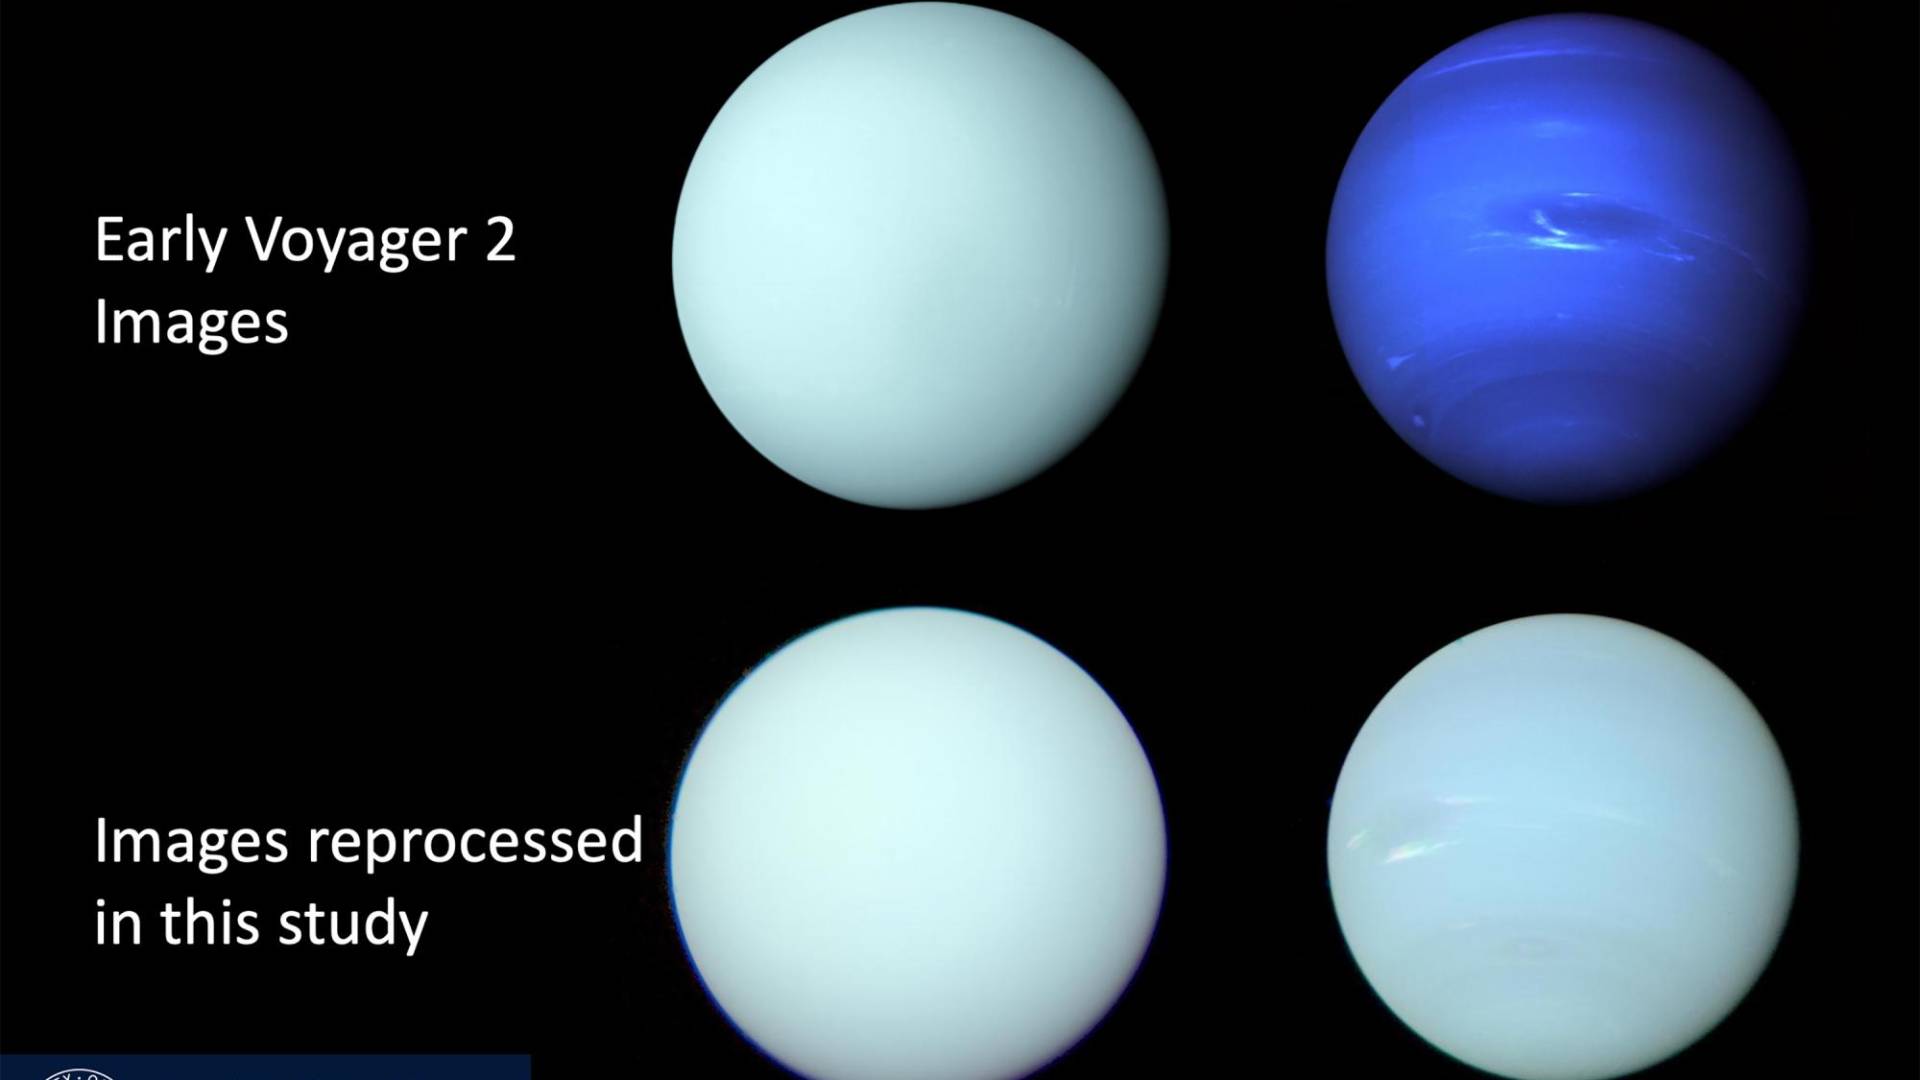 $!Un nuevo estudio reprocesó imágenes de Urano y Neptuno tomadas por Voyager 2 para acercarse más a colores reales.